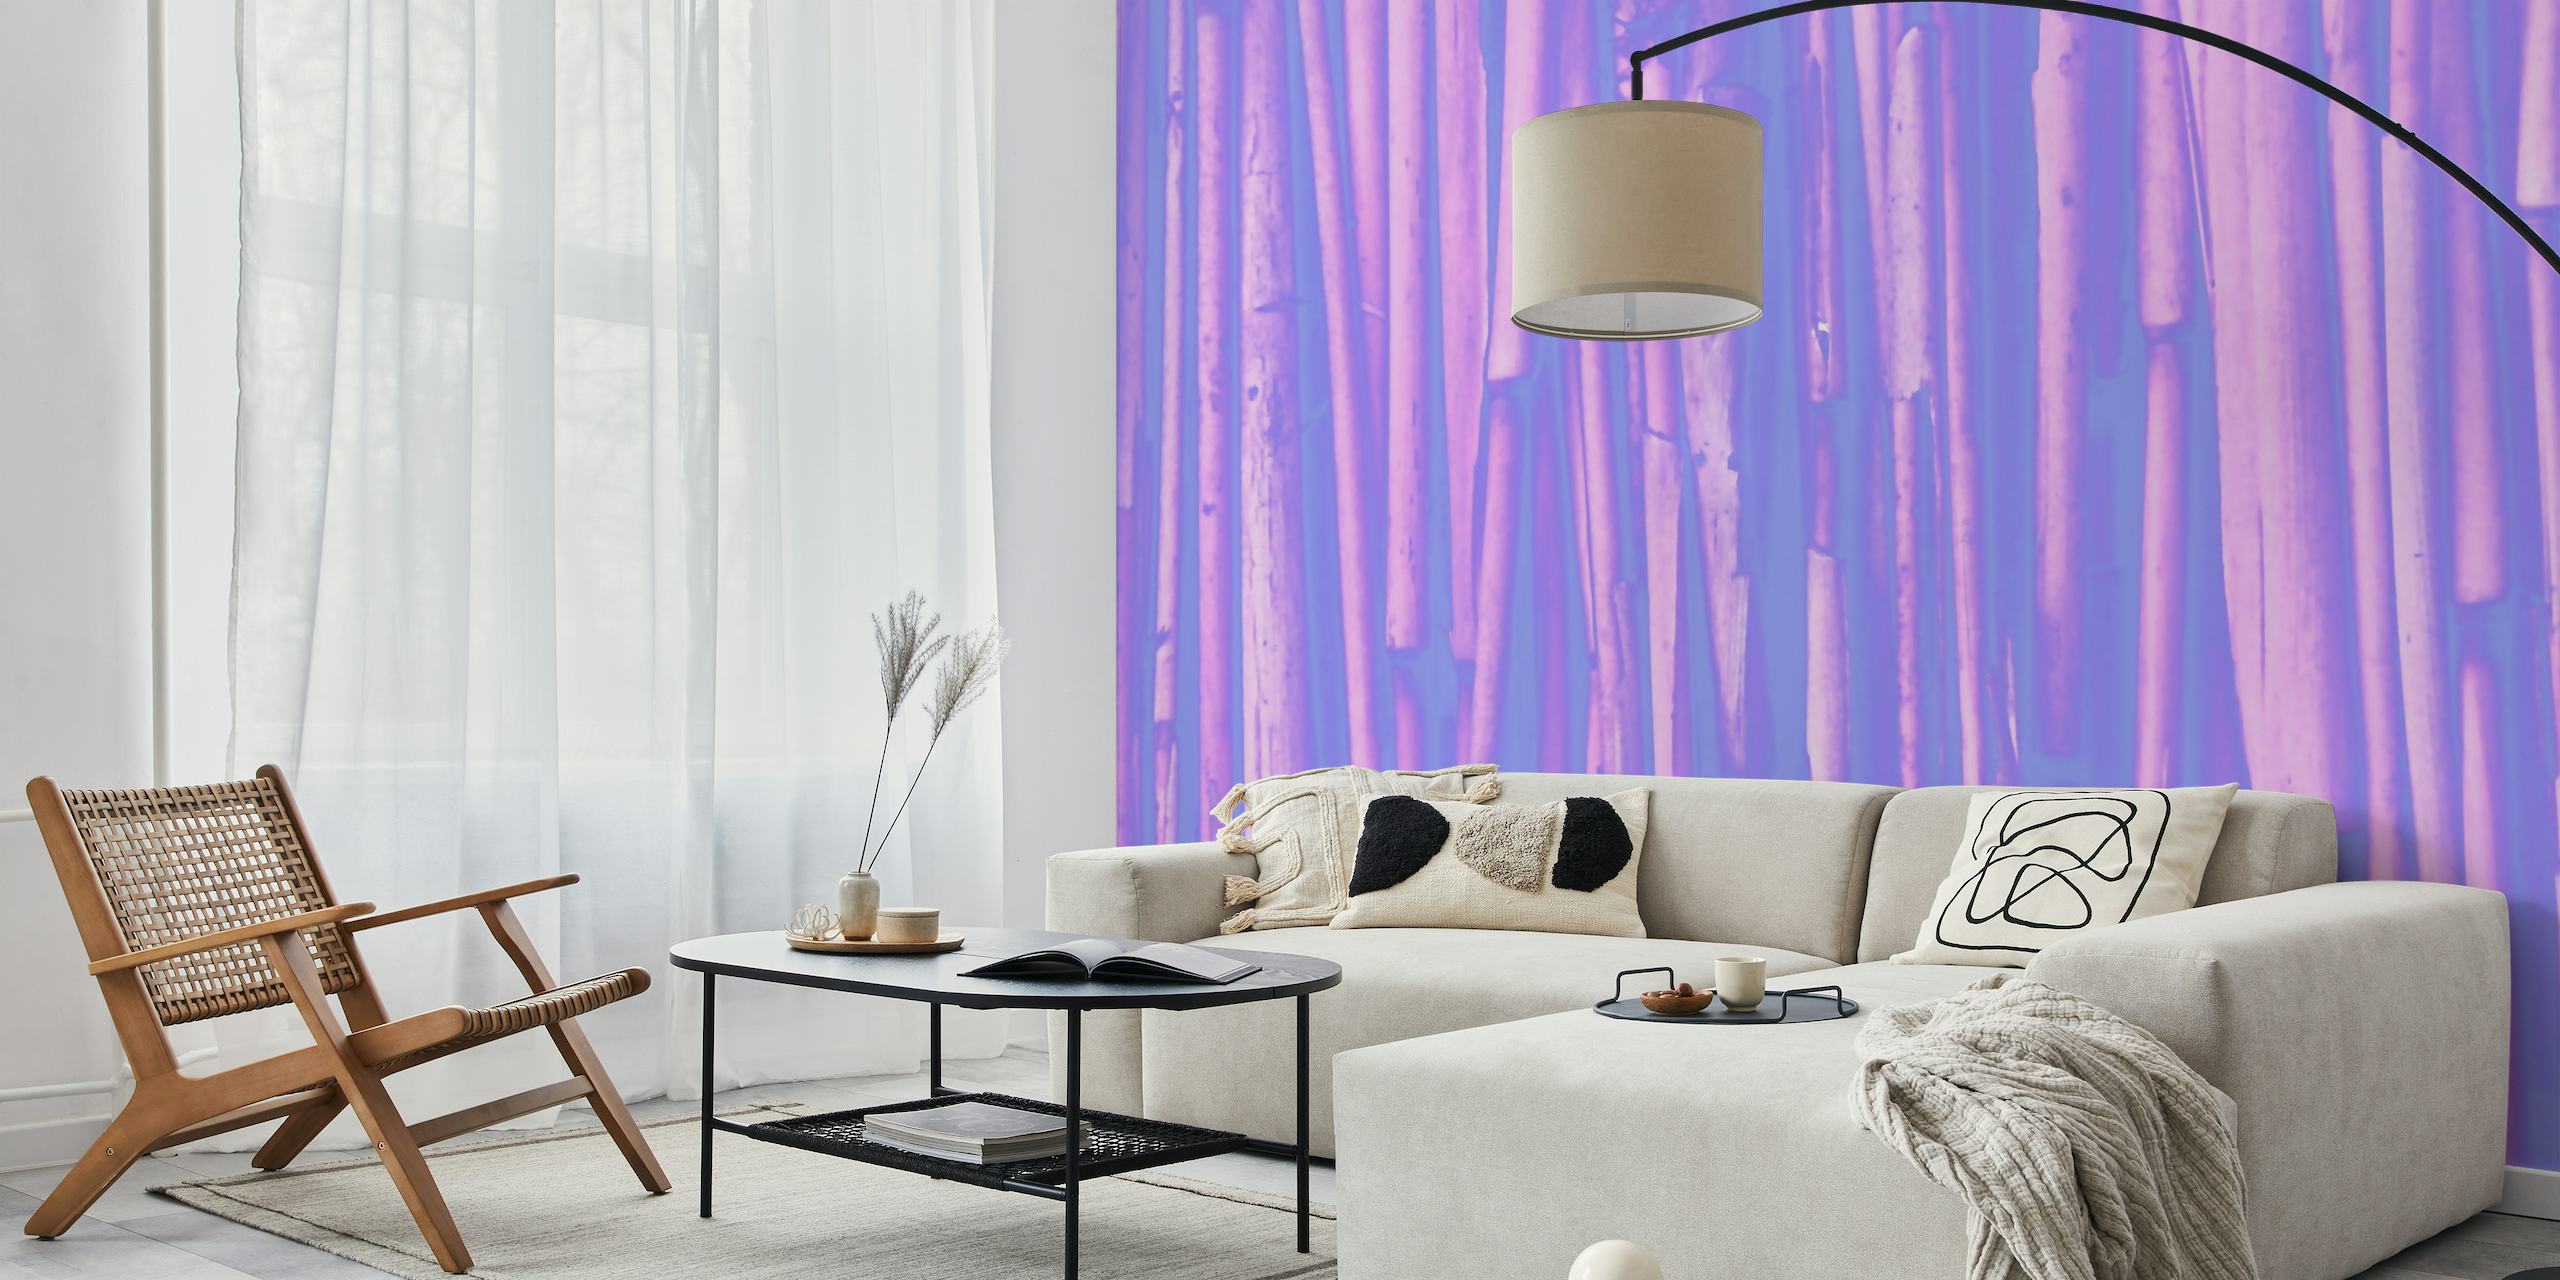 Fotomural de estilizadas cañas de bambú de color violeta creando un ambiente tranquilo y elegante.